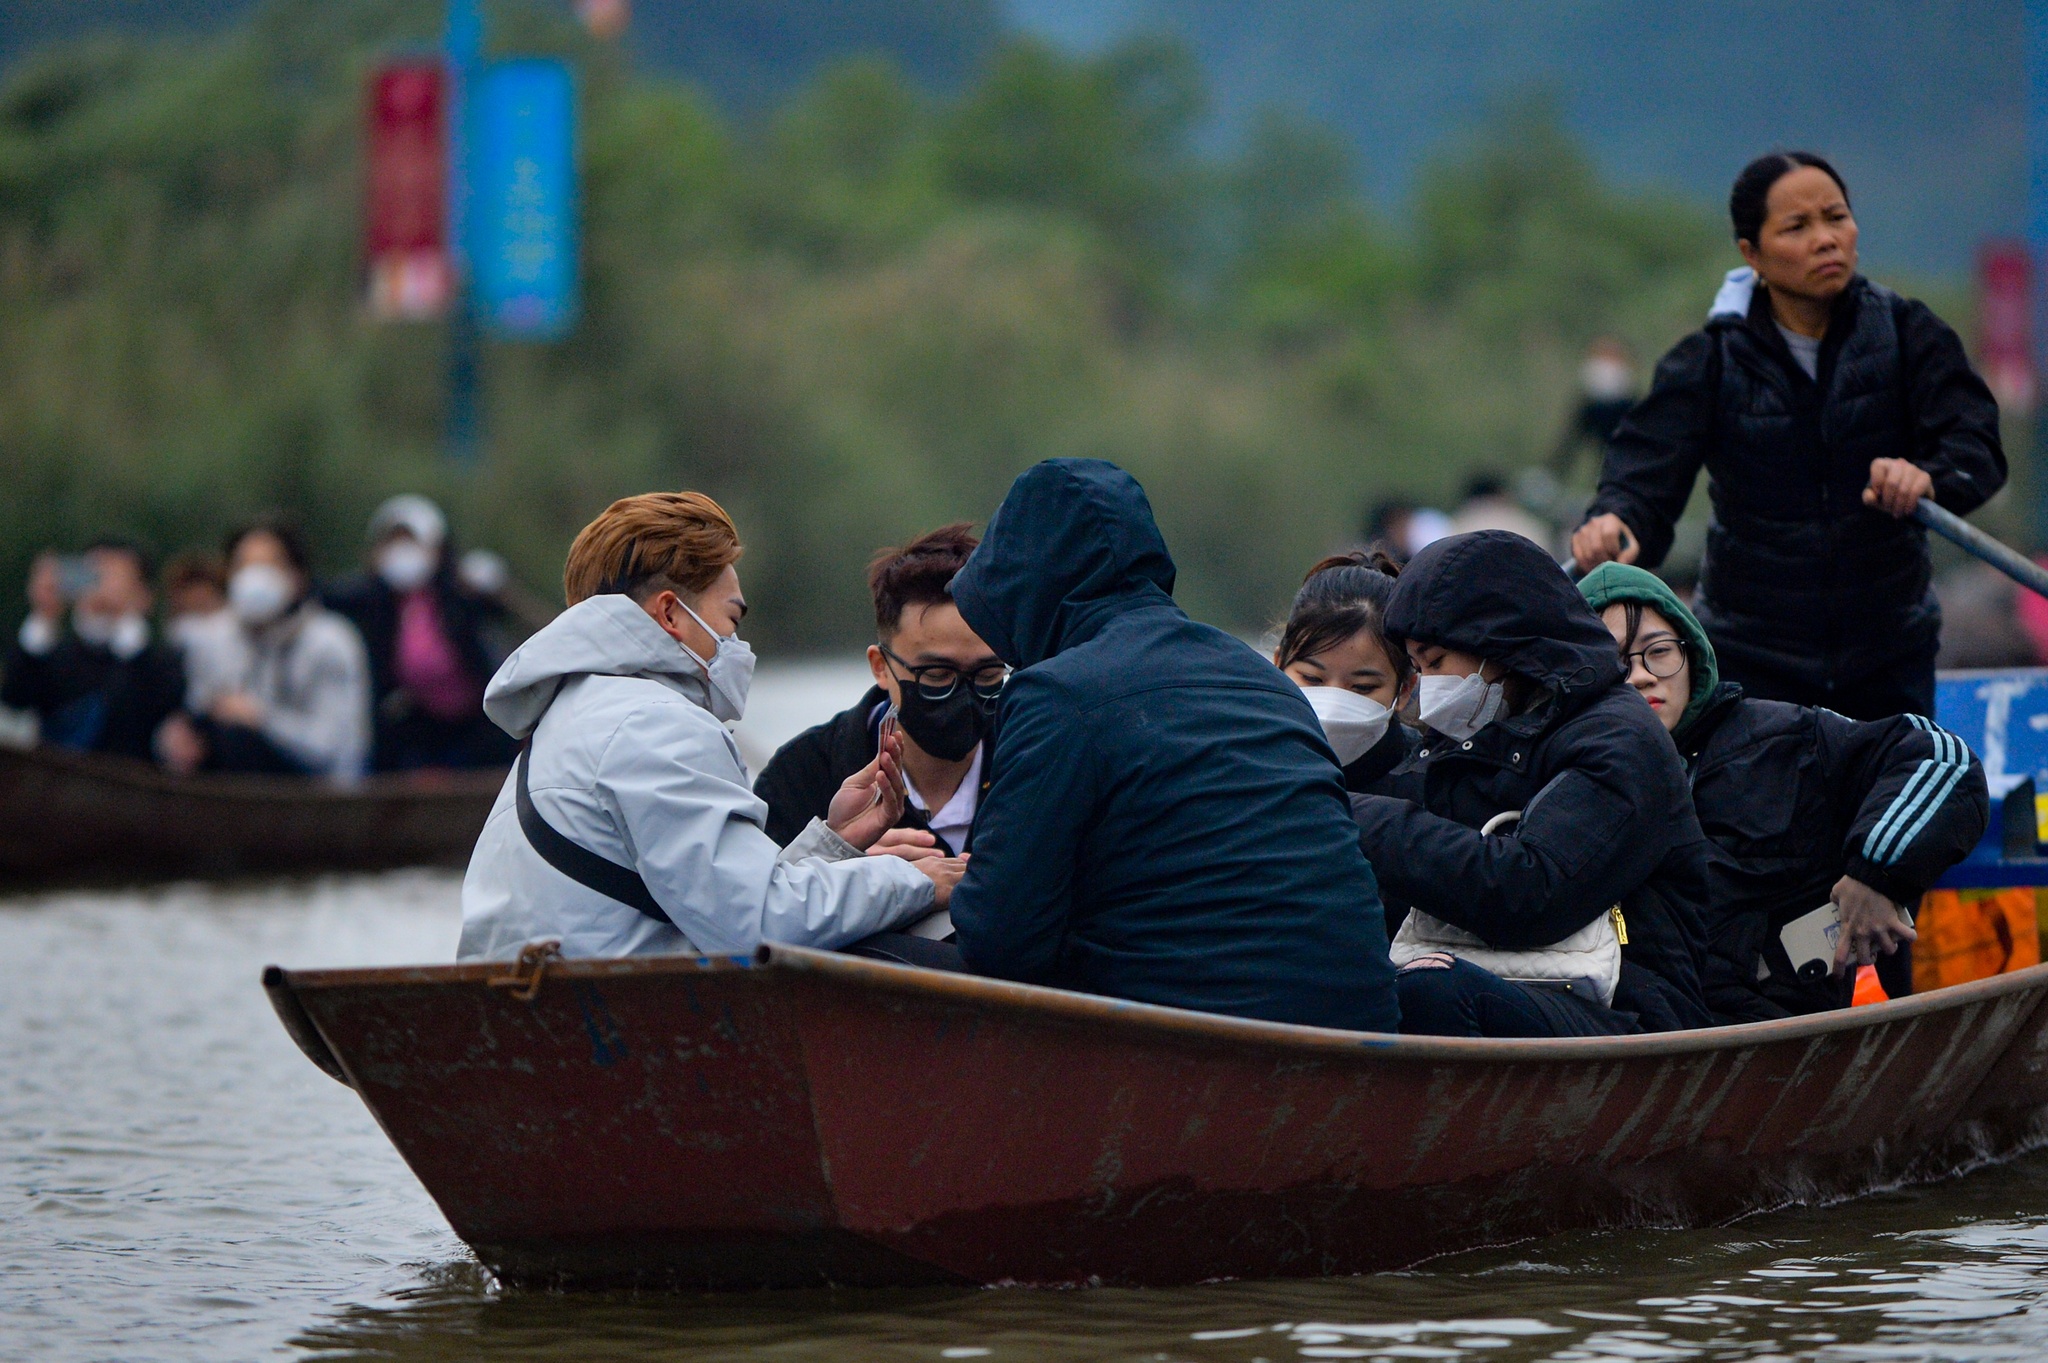 Du khách đánh bạc trên thuyền ở chùa Hương, ban quản lý 'than' khó - ảnh 3